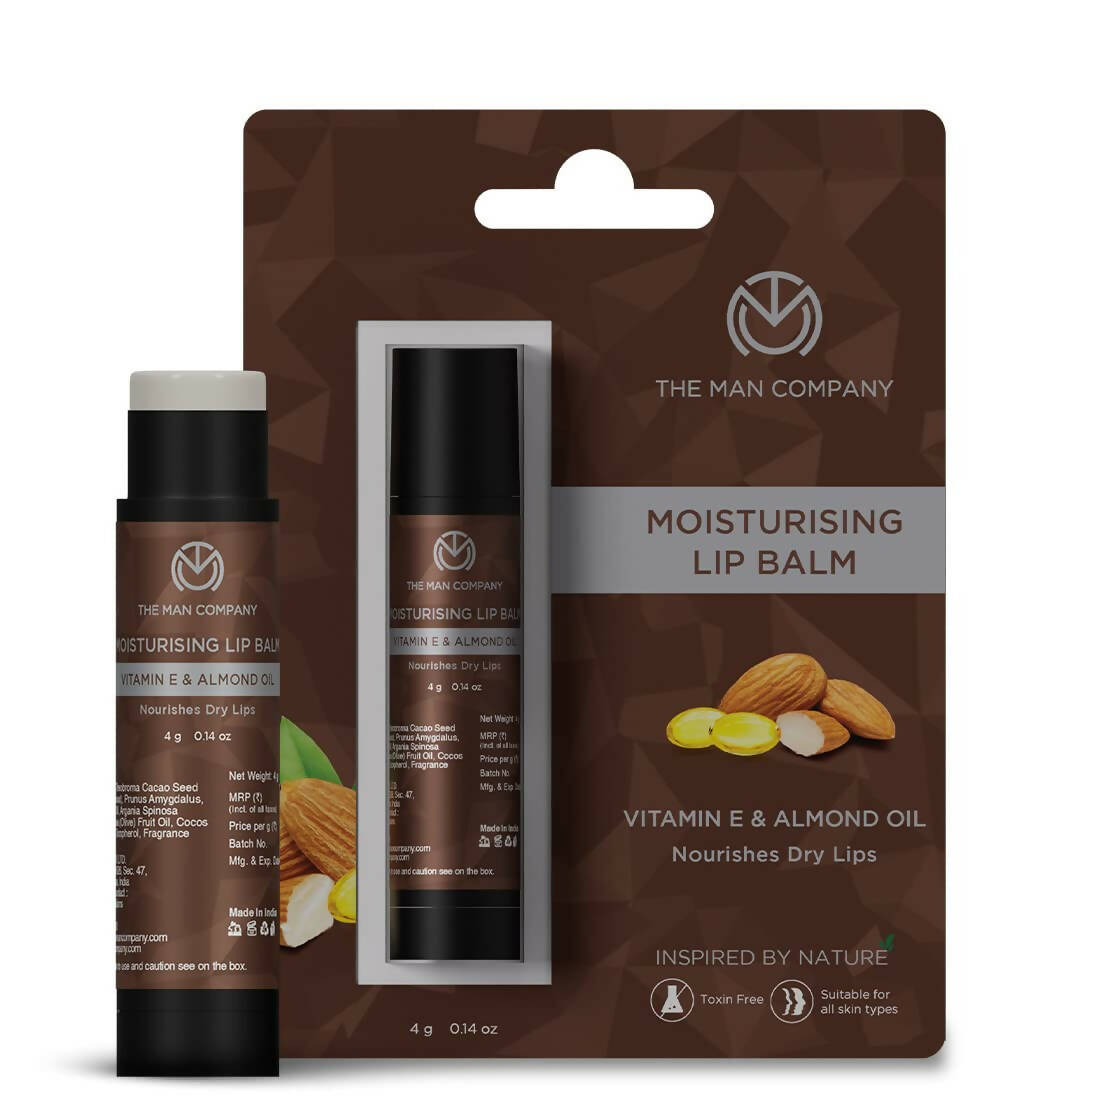 The Man Company Moisturising Lip Balm with Vitamin E, Almond Oil - BUDNEN